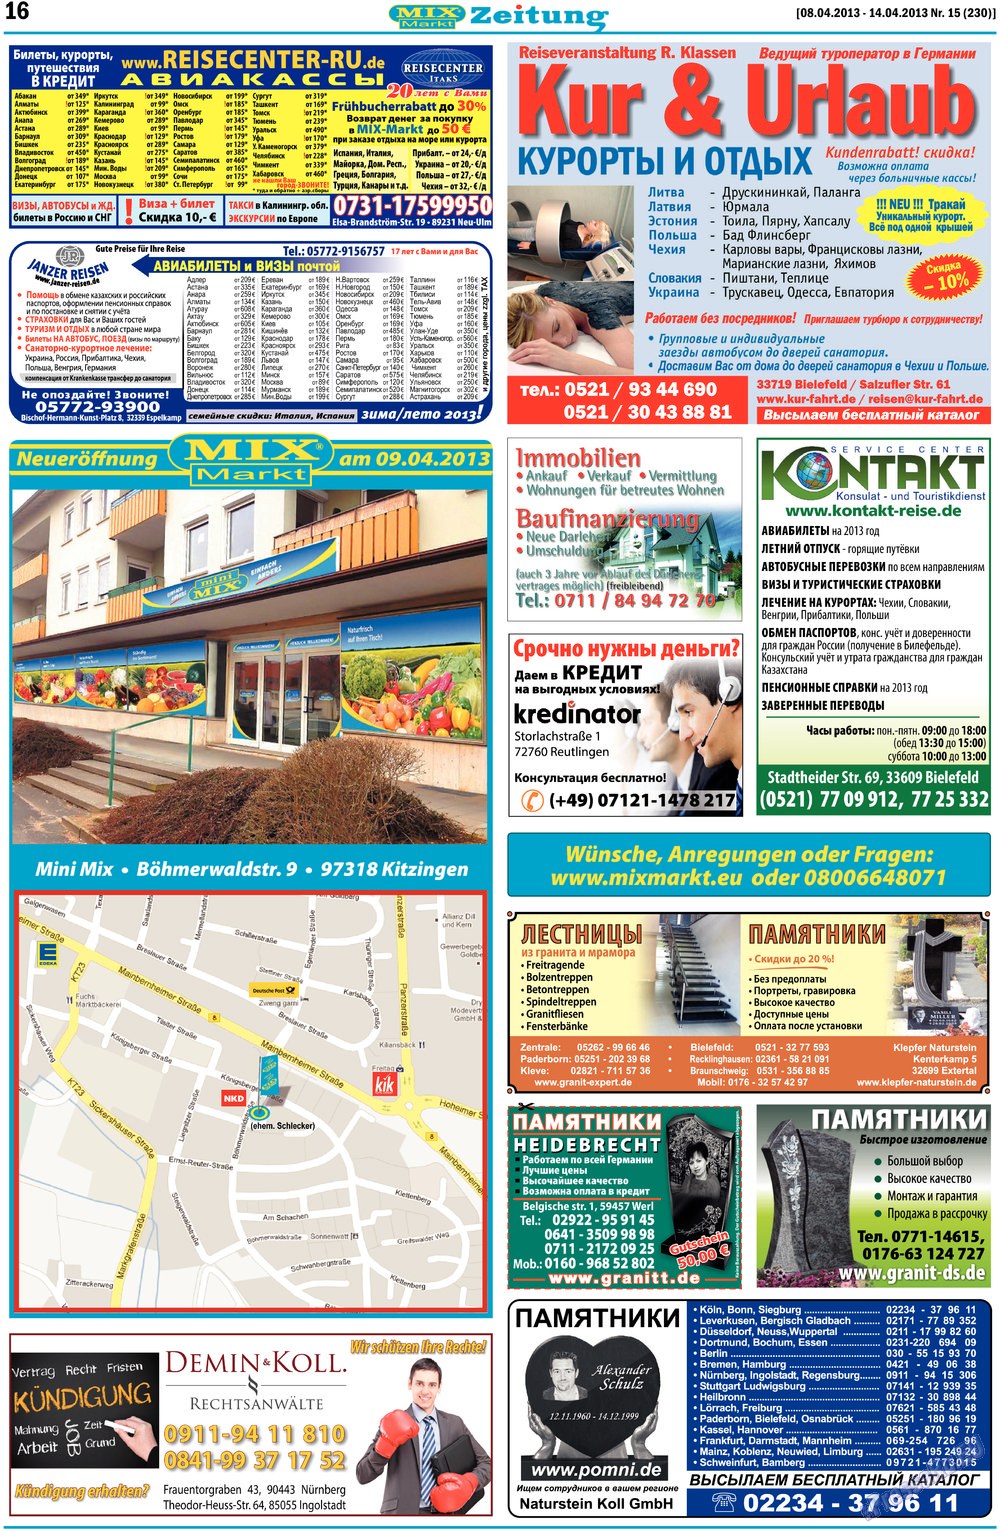 MIX-Markt Zeitung, газета. 2013 №15 стр.16